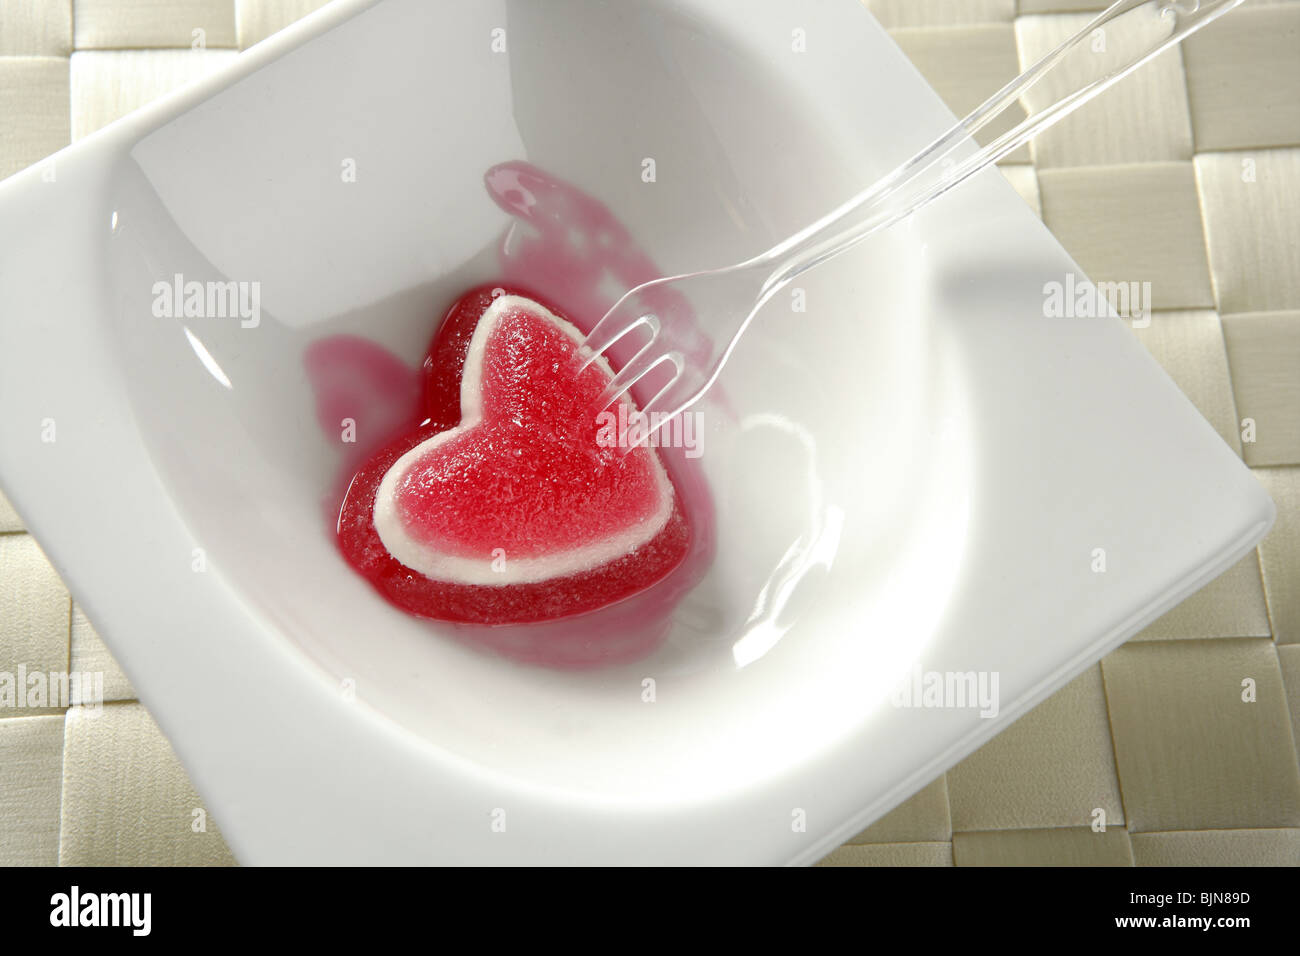 Essen Sie Gelee Erdbeere blutige Herz romantische Metapher Stockfoto